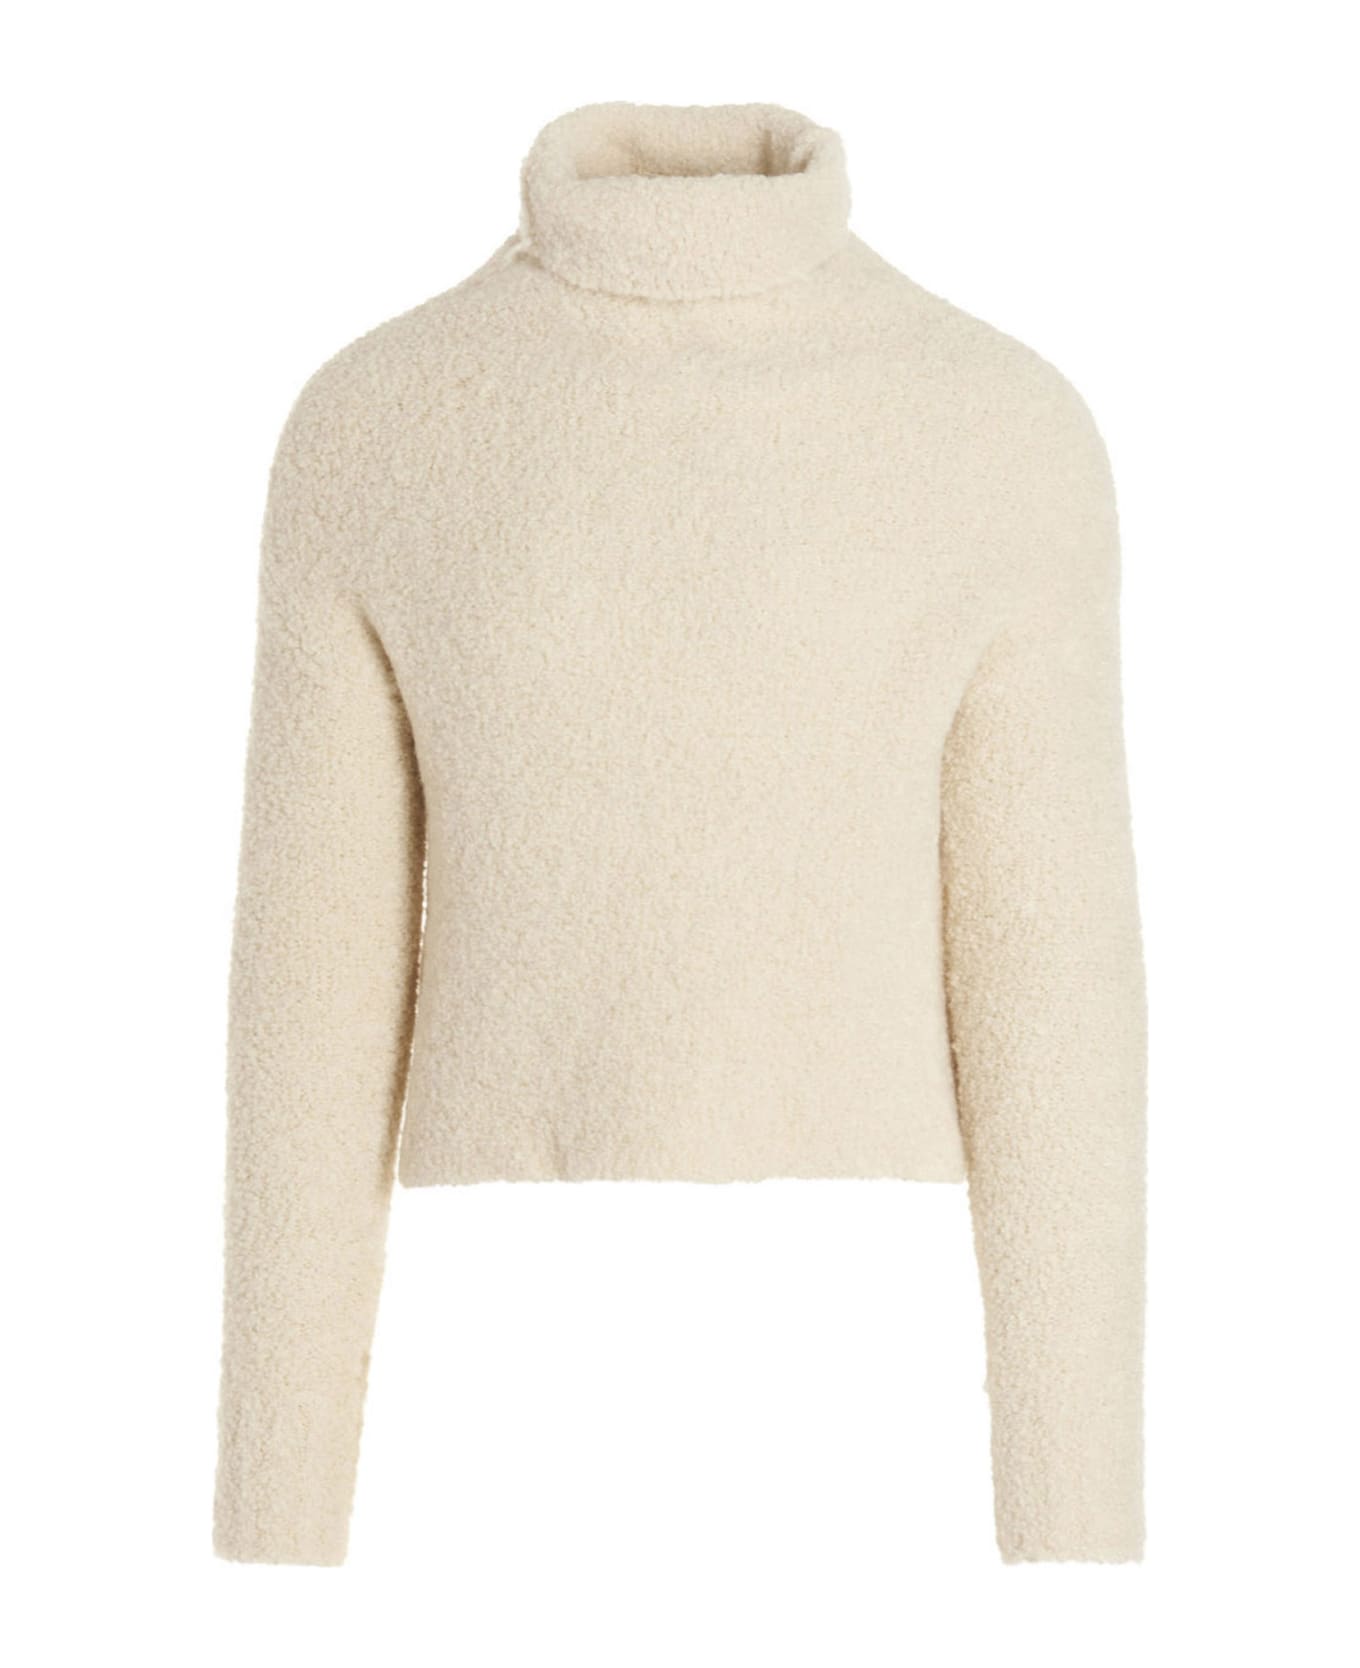 Ma'ry'ya Bouclé Sweater - White